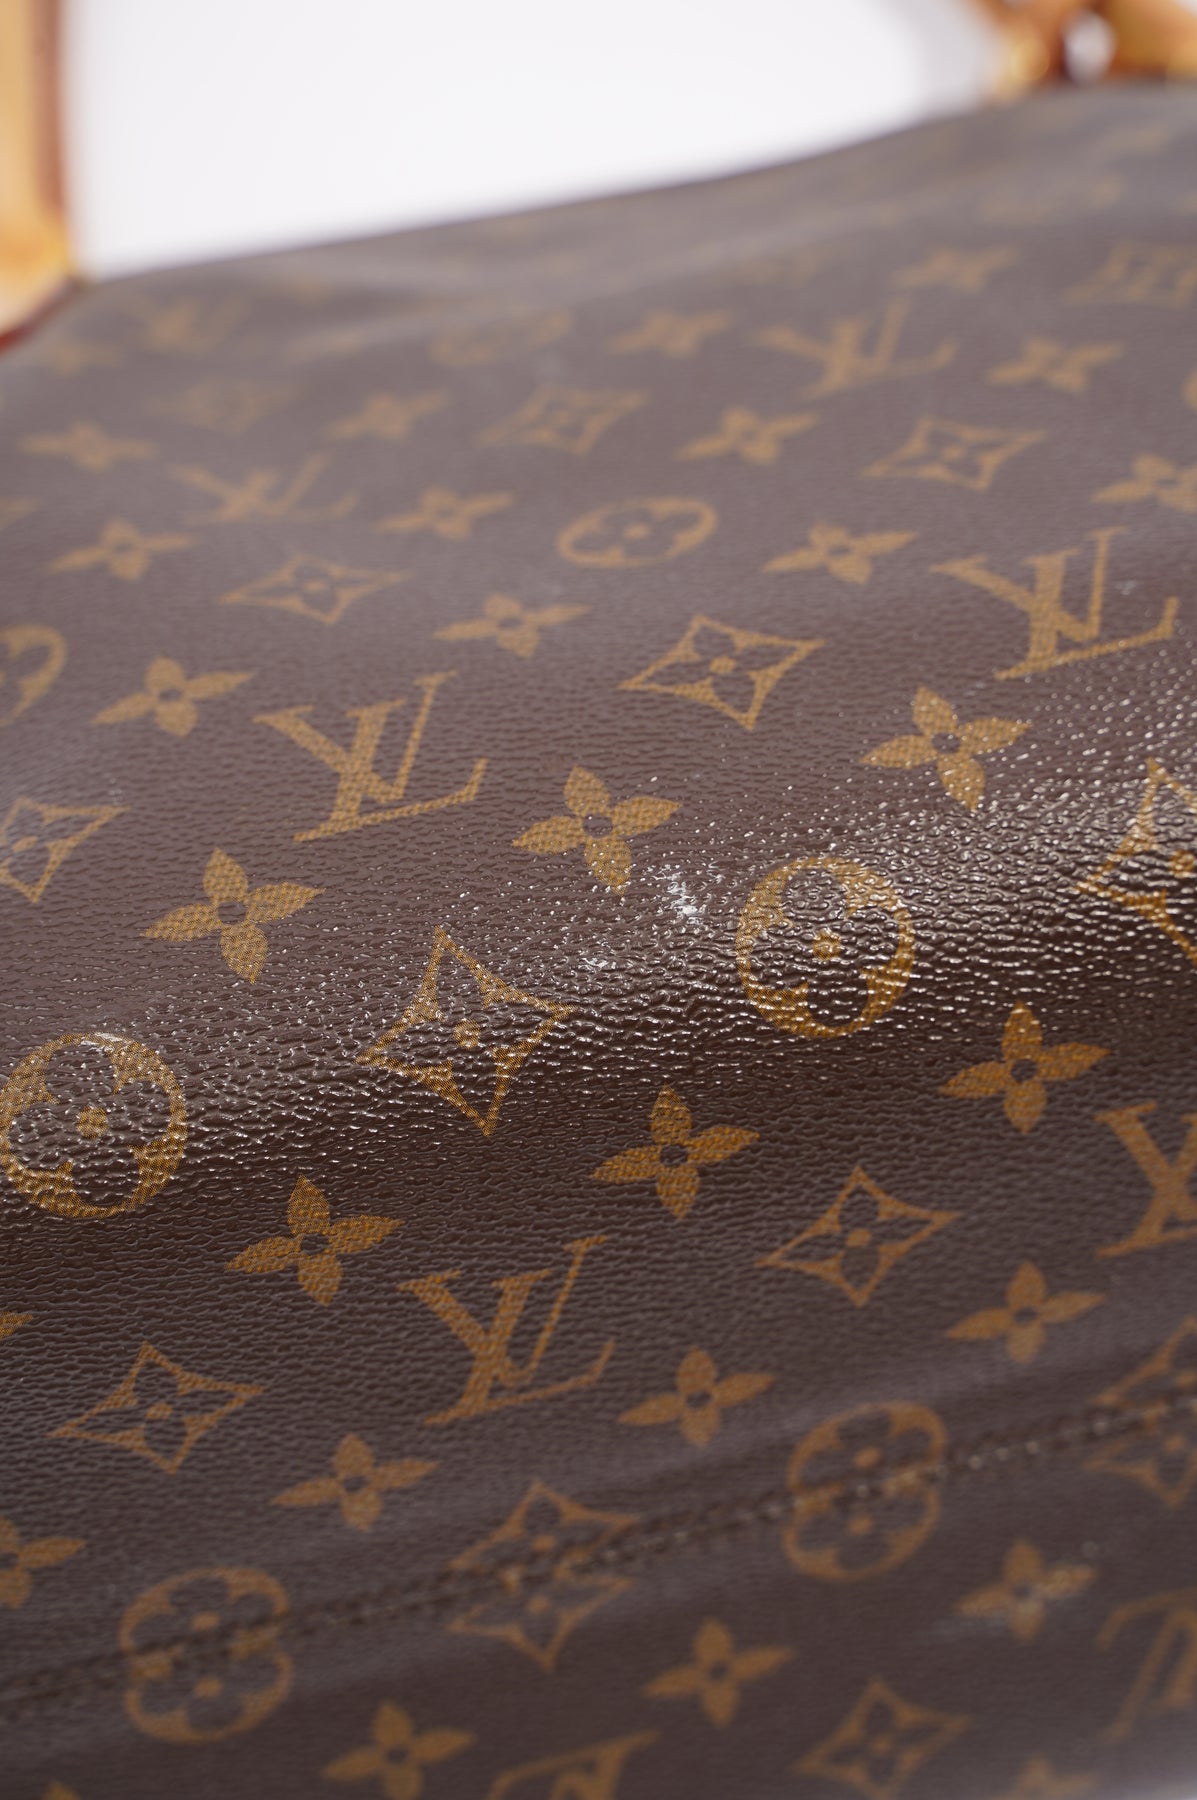 Louis Vuitton - Raspail Vintage Shoulder Bag - Monogram Canvas